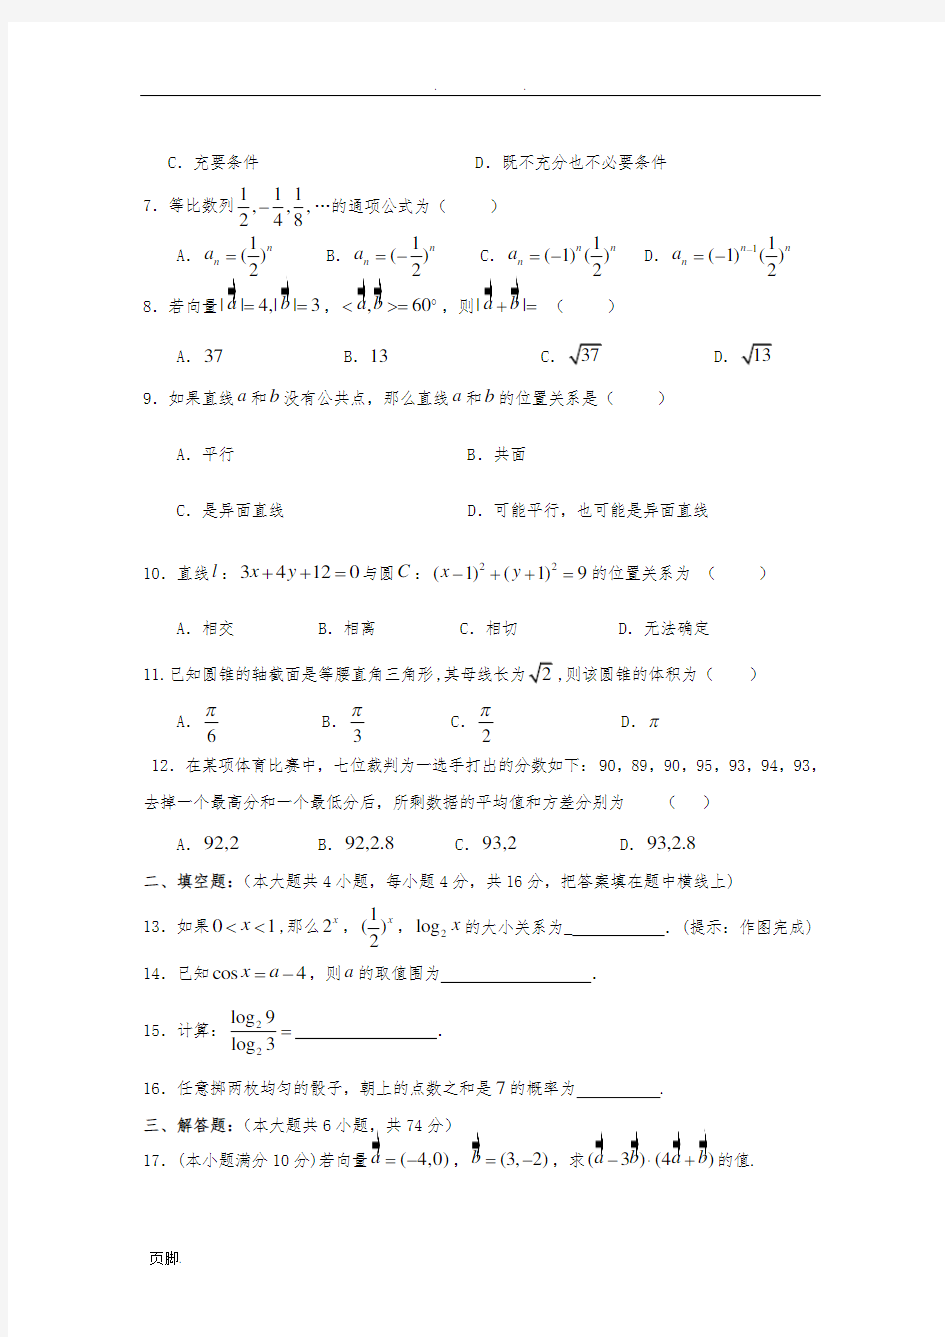 陕西省普通高校职业教育单独招生统一考试模拟题(12)